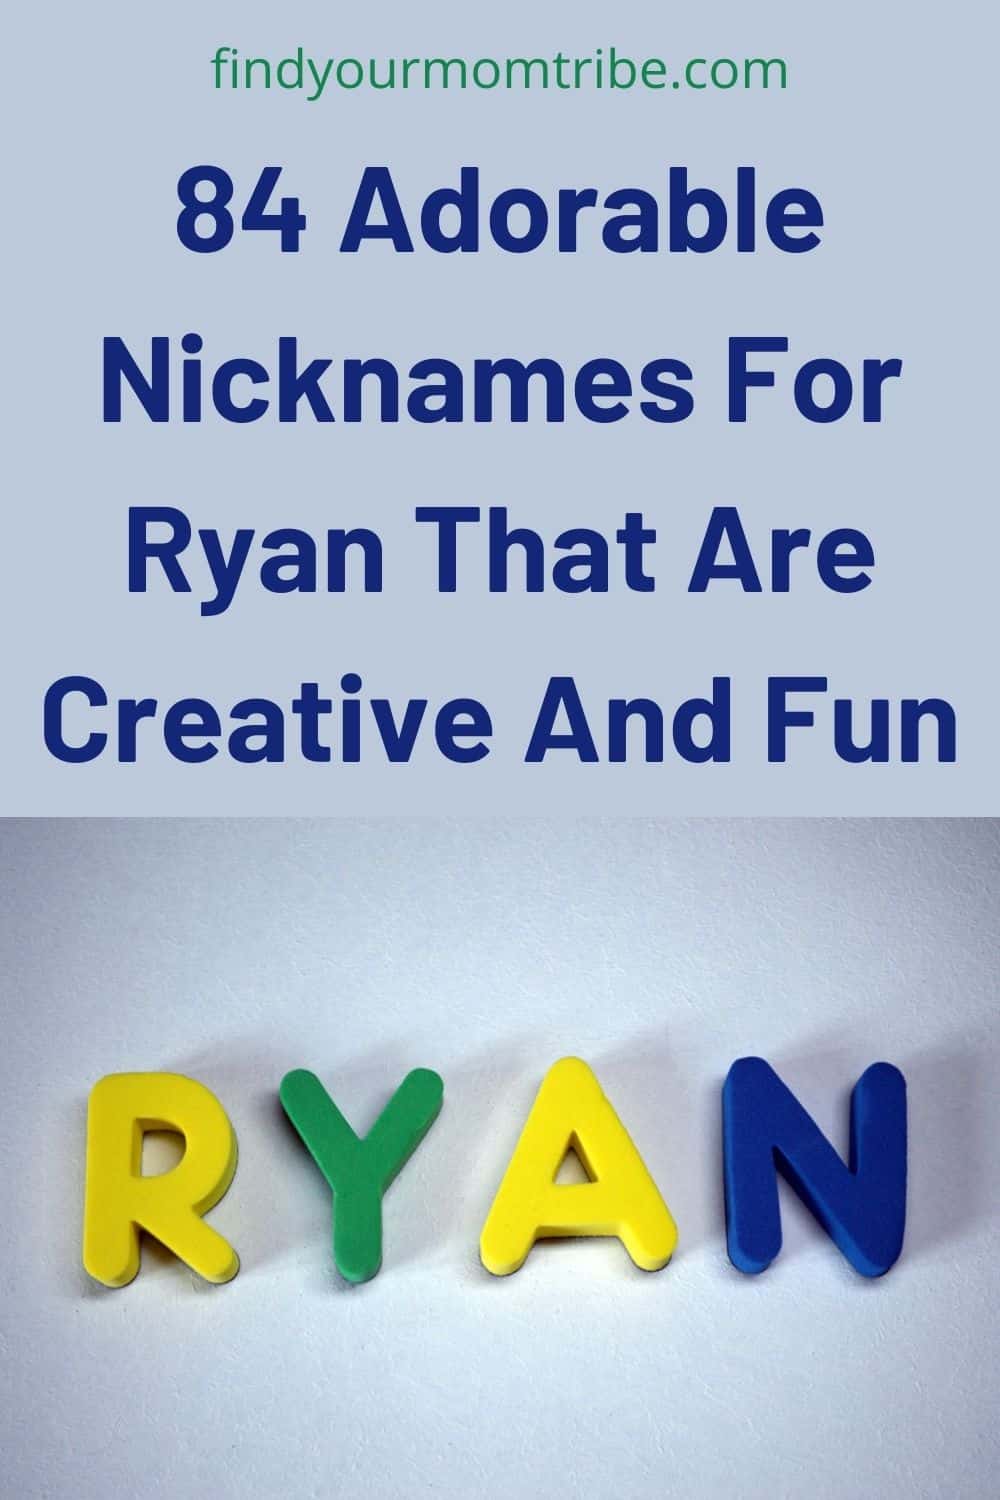 Pinterest nicknames for ryan